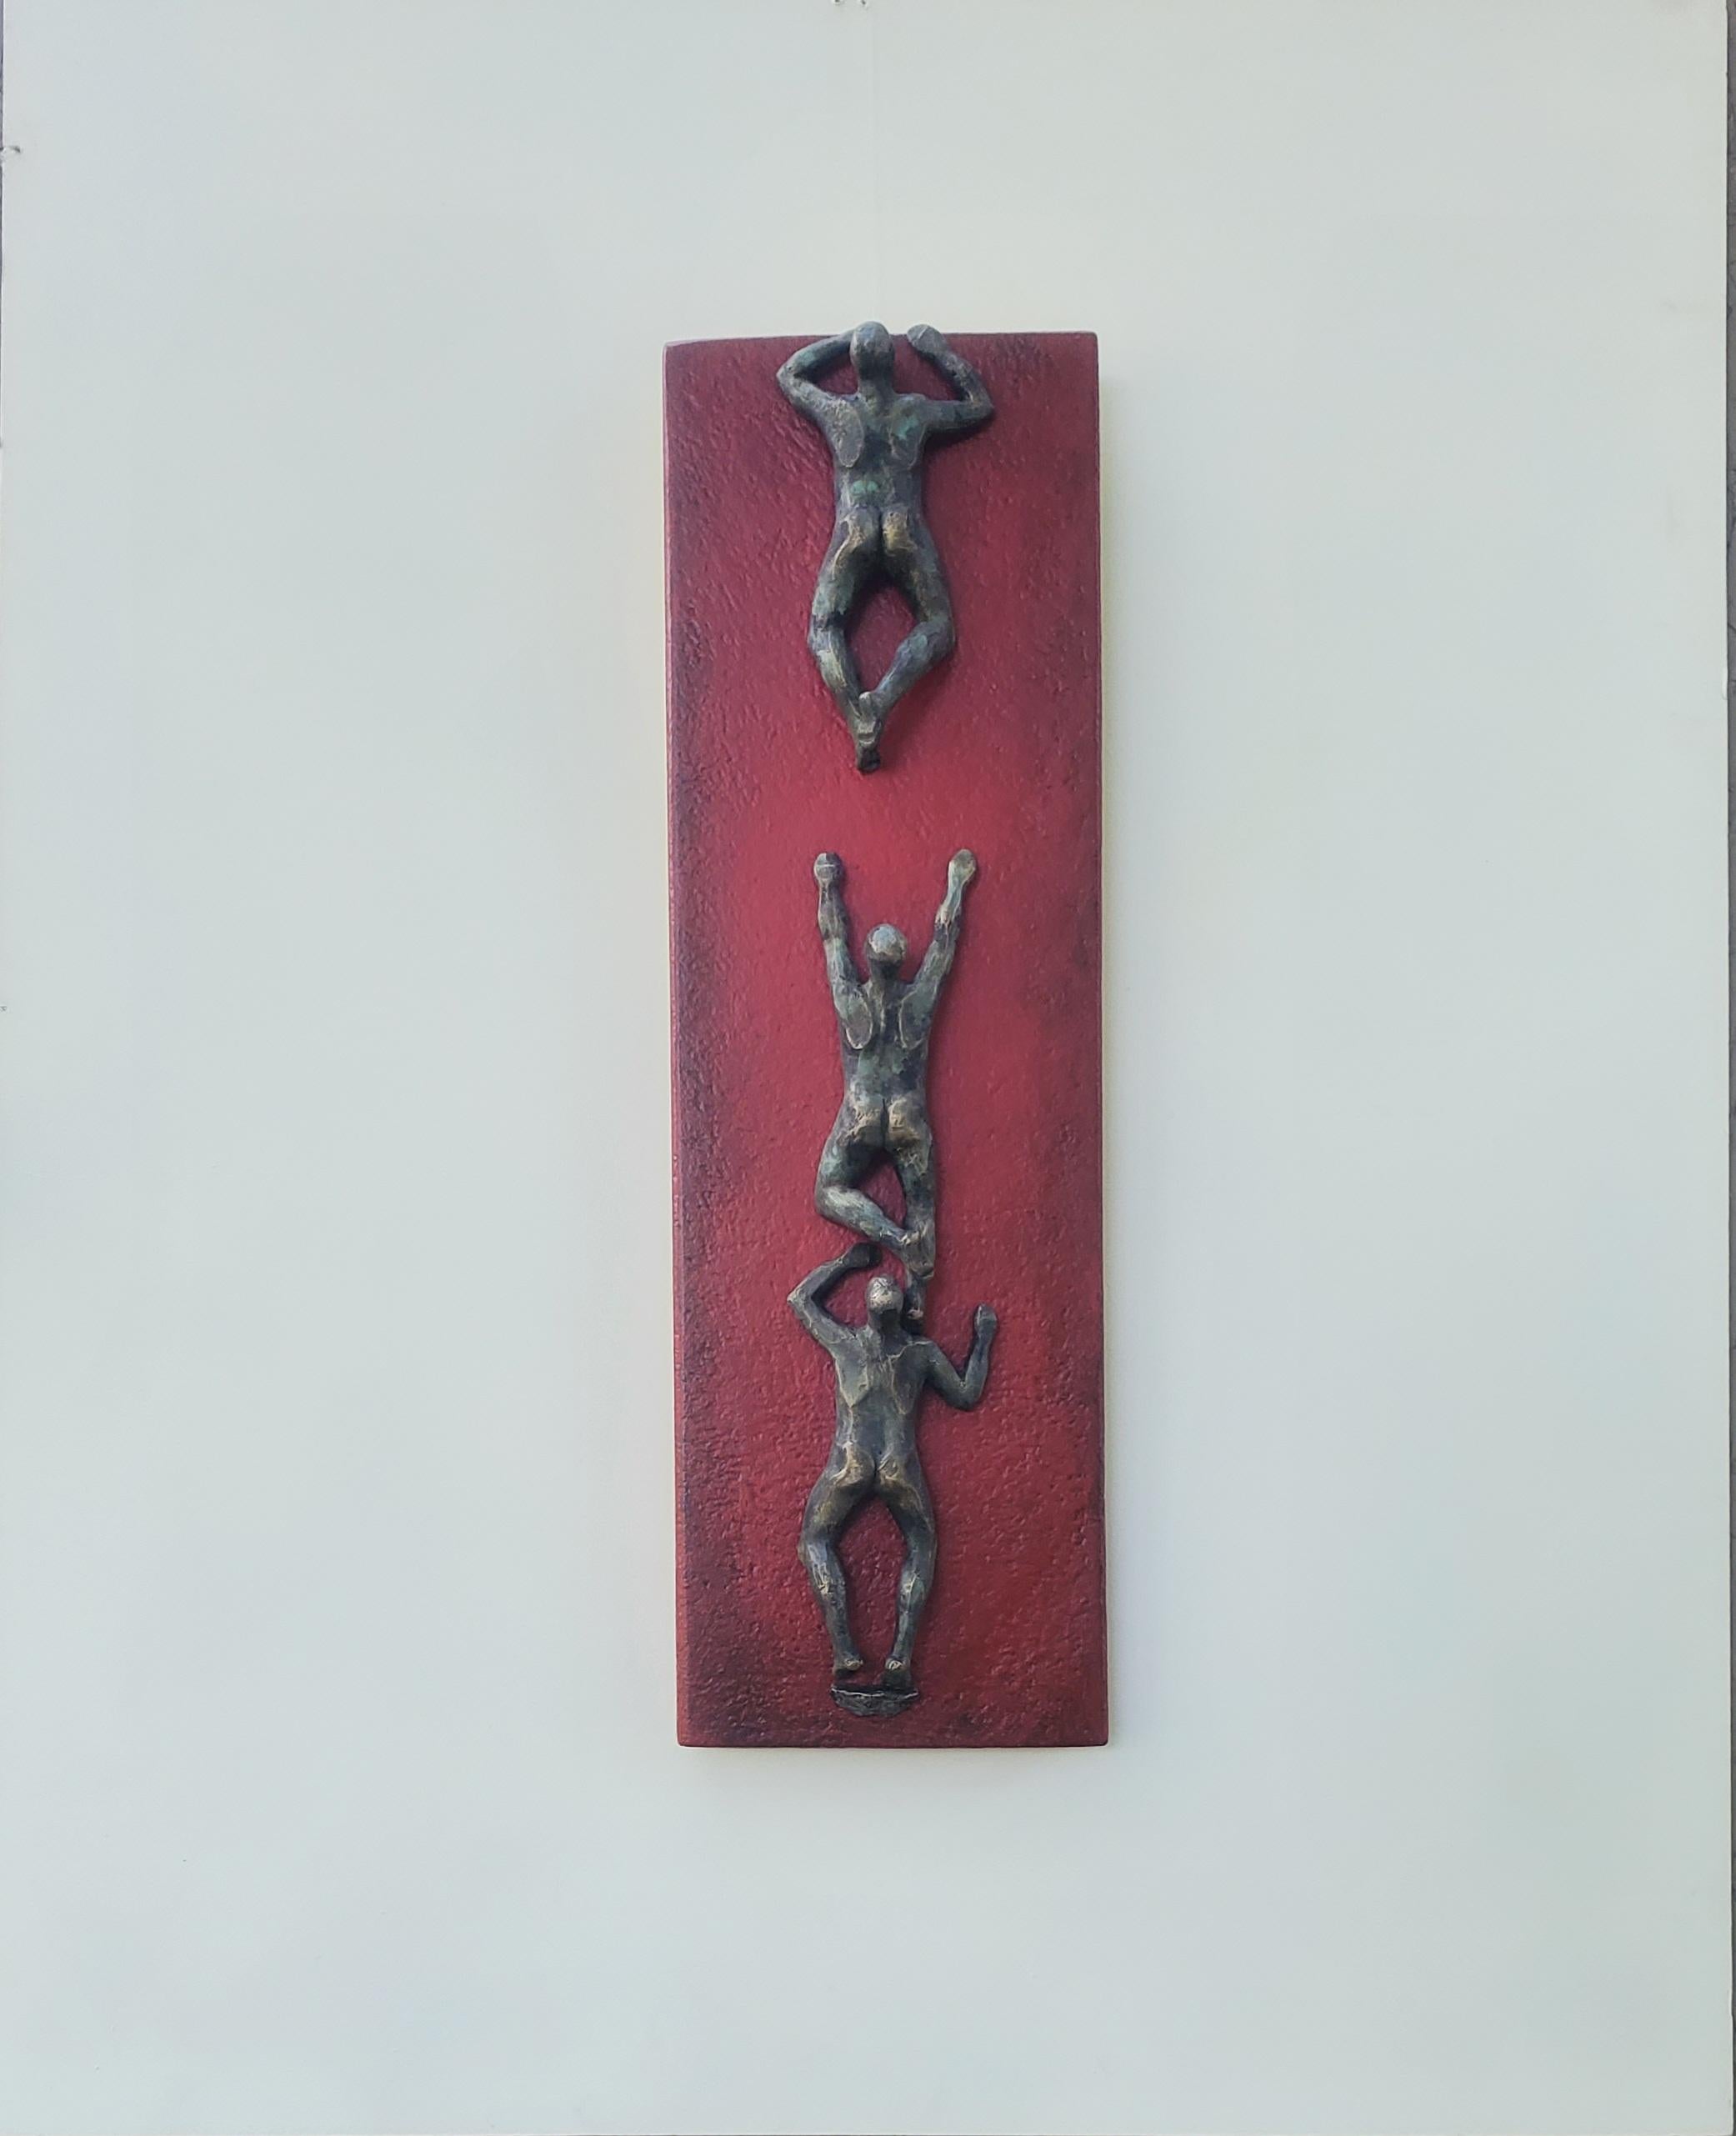 <p>Commentaires de l'artiste<br>L'artiste Yelitza Diaz combine art figuratif et éléments géométriques avec trois personnages nus grimpant sur un panneau vertical rouge. Ancrée dans l'idée de conquérir des obstacles et de franchir des barrières,